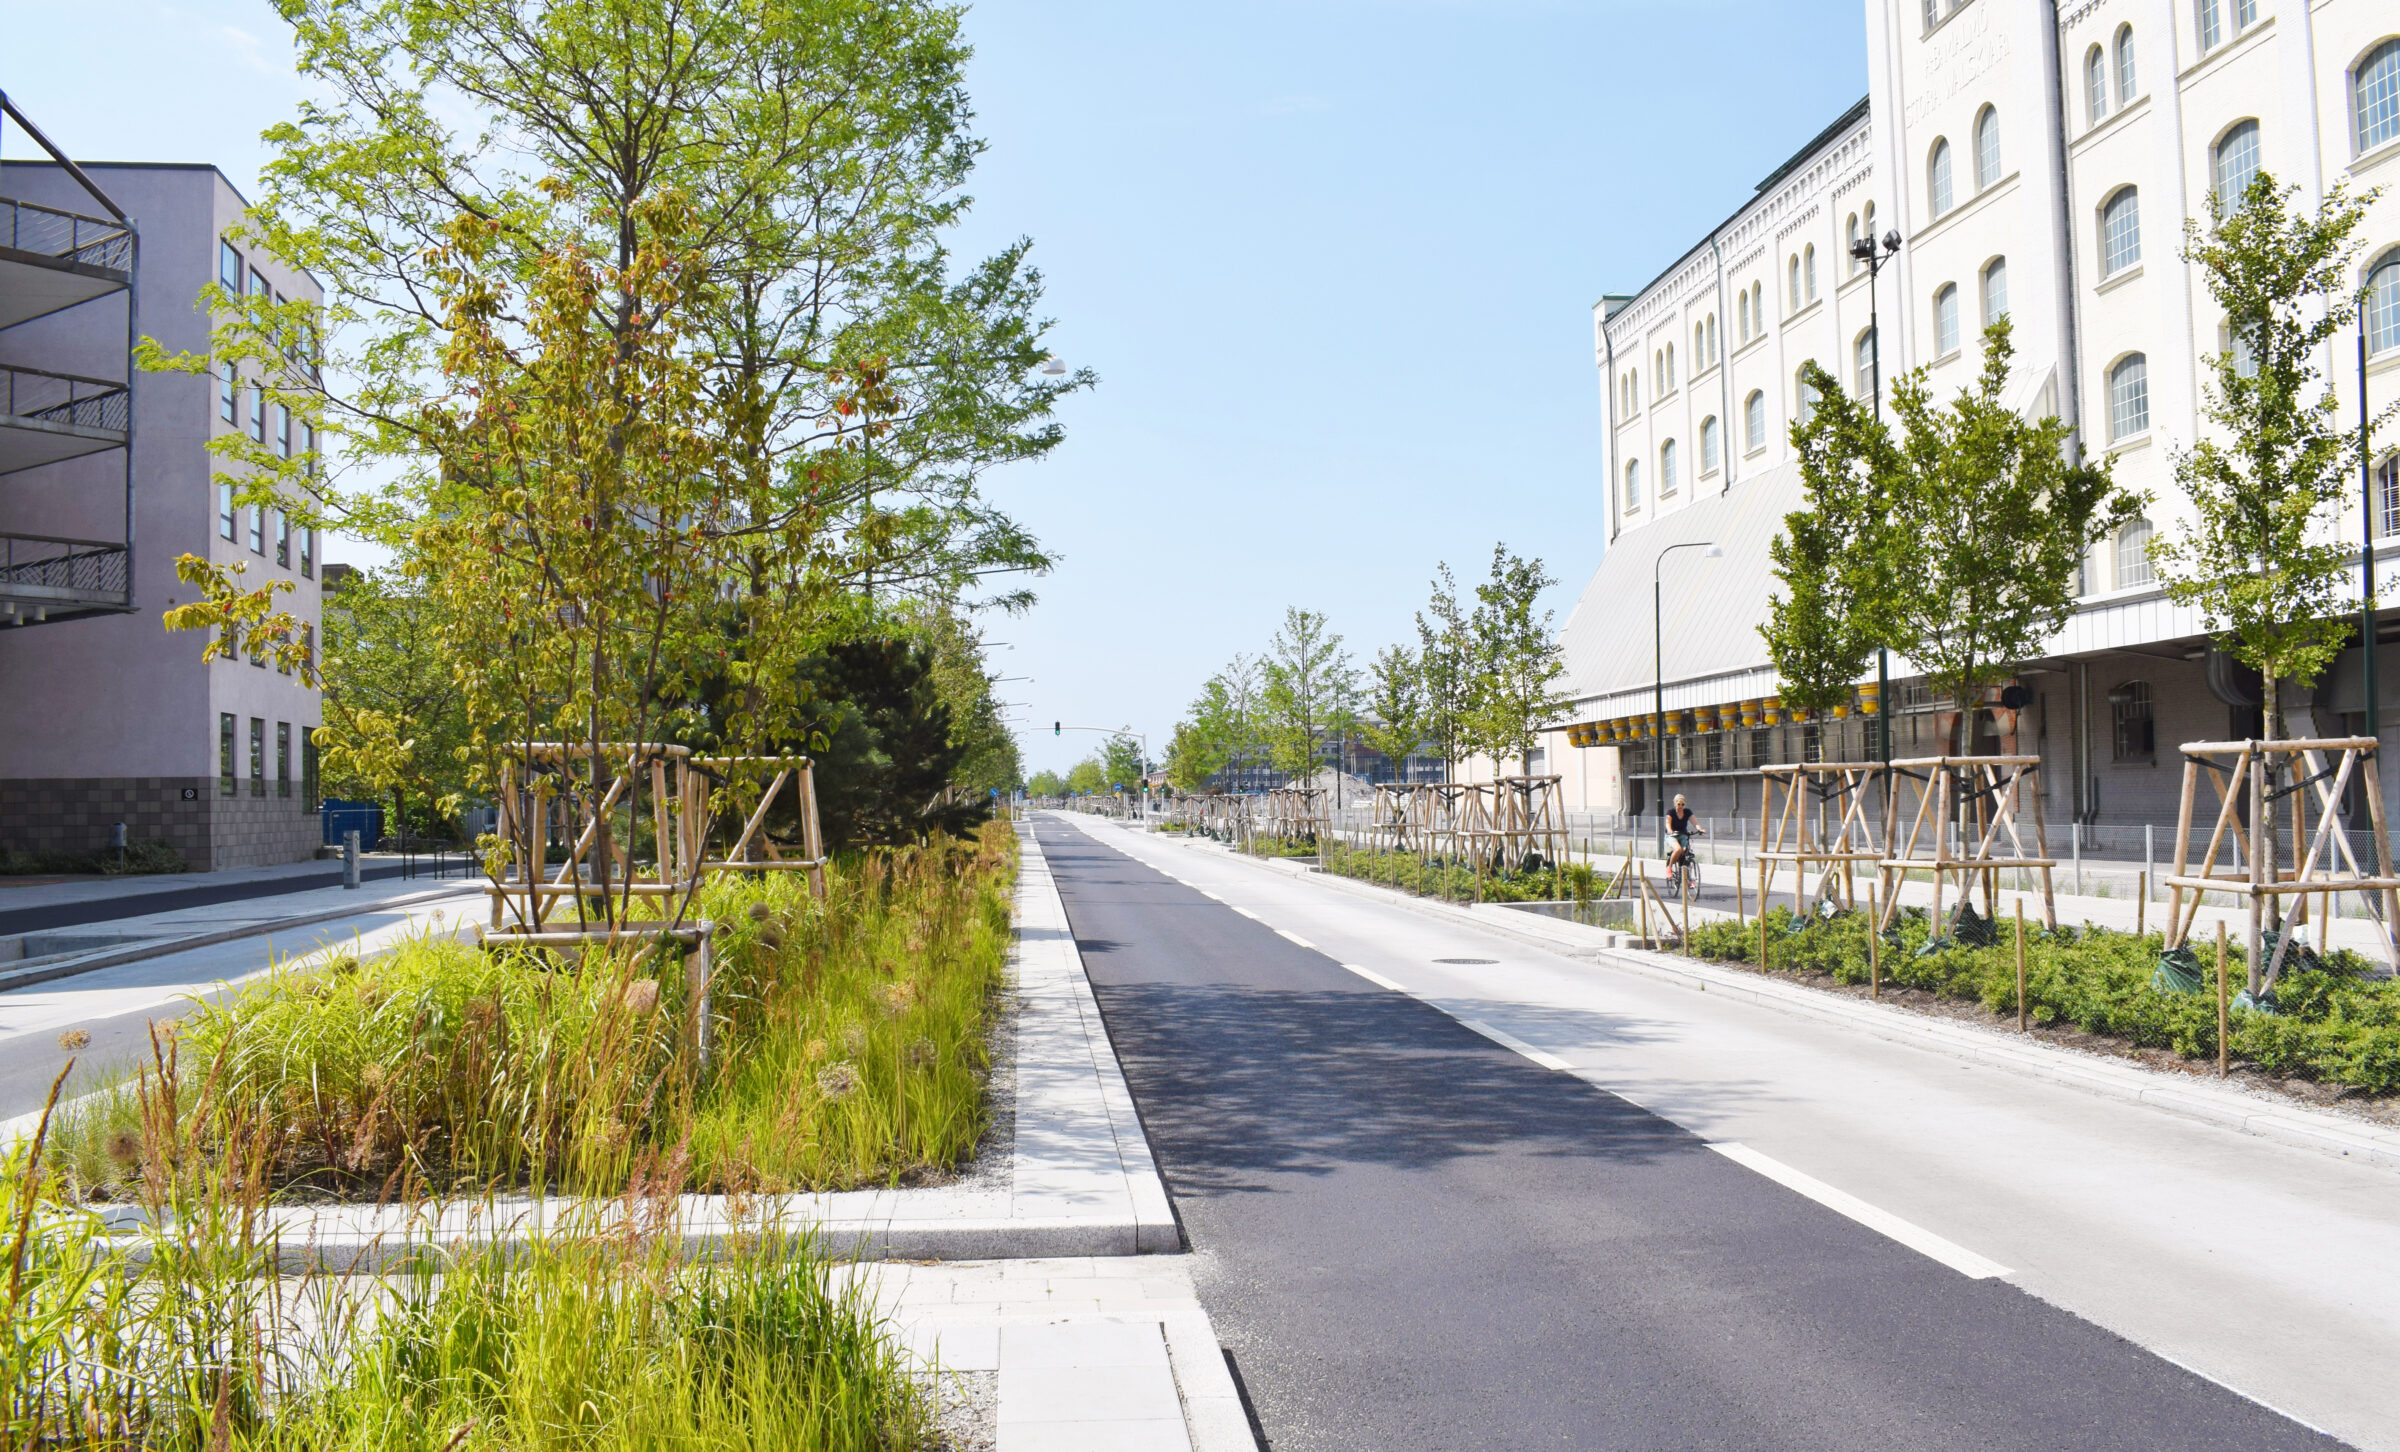 Je prvou fázou rozsiahleho projektu Gäddorna, ktorého cieľom je premena verejných priestorov na multifunkčné ulice. 